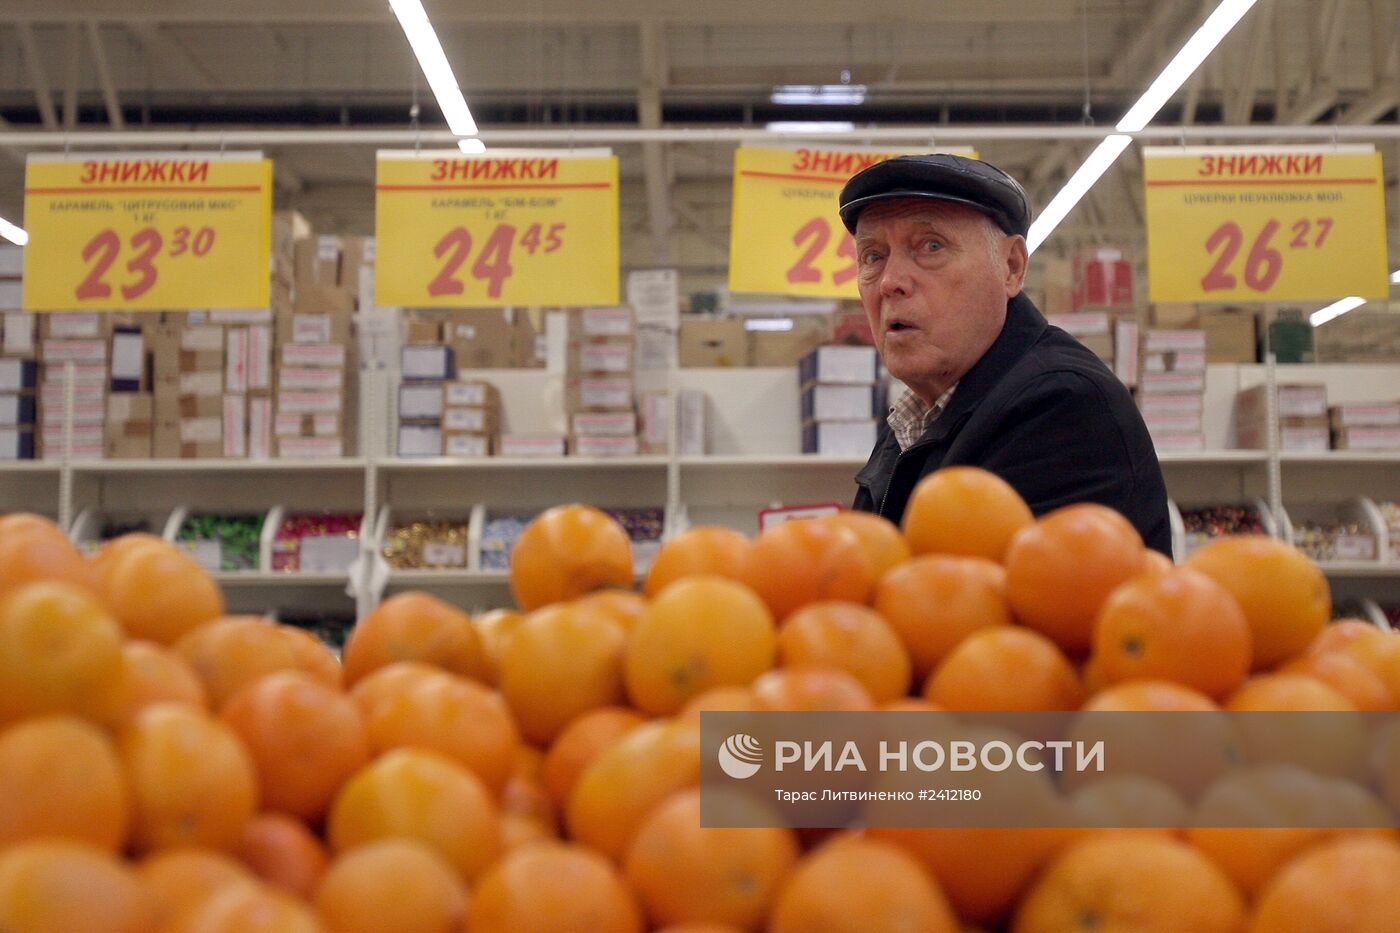 Работа супермаркета "Ашан" в Симферополе